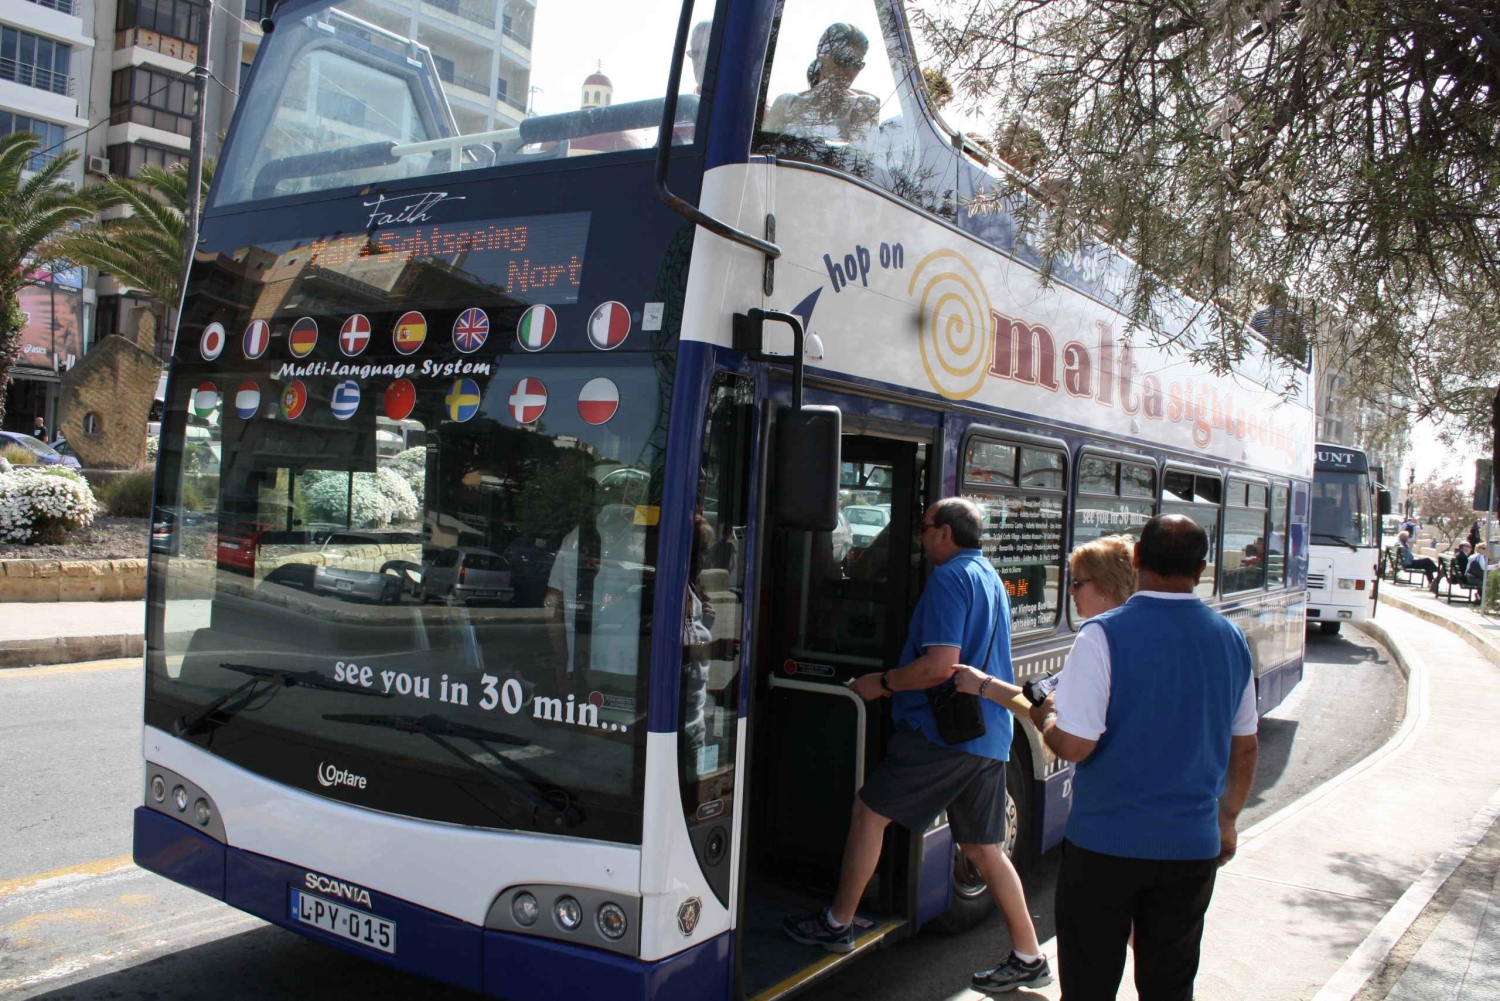 Malta: Hop-On Hop-Off Bus Tours